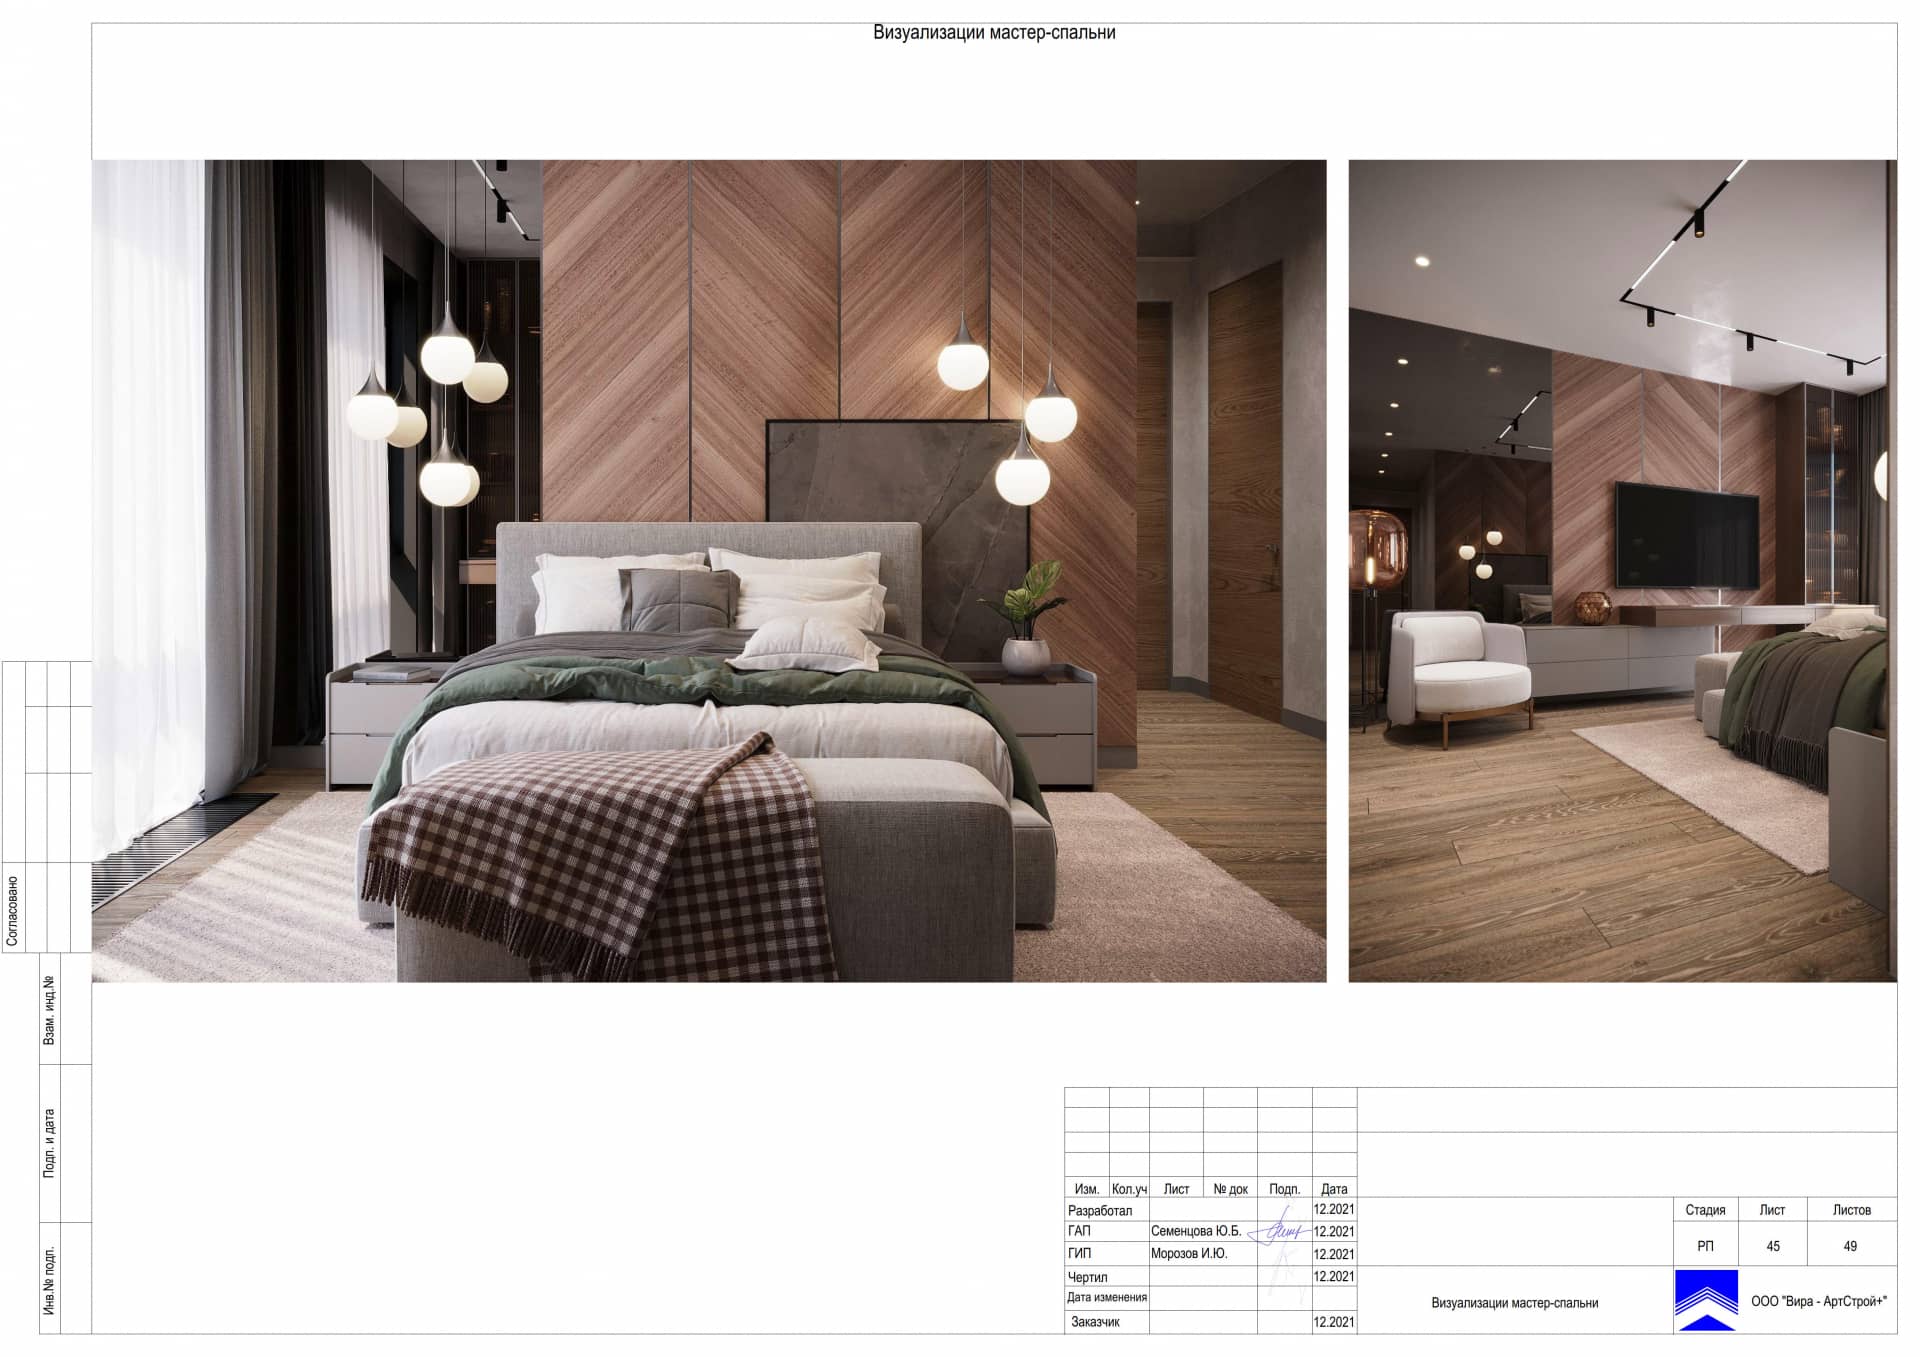 Визуализации мастер-спальни, квартира 142 м² в ЖК «Фили Сити»